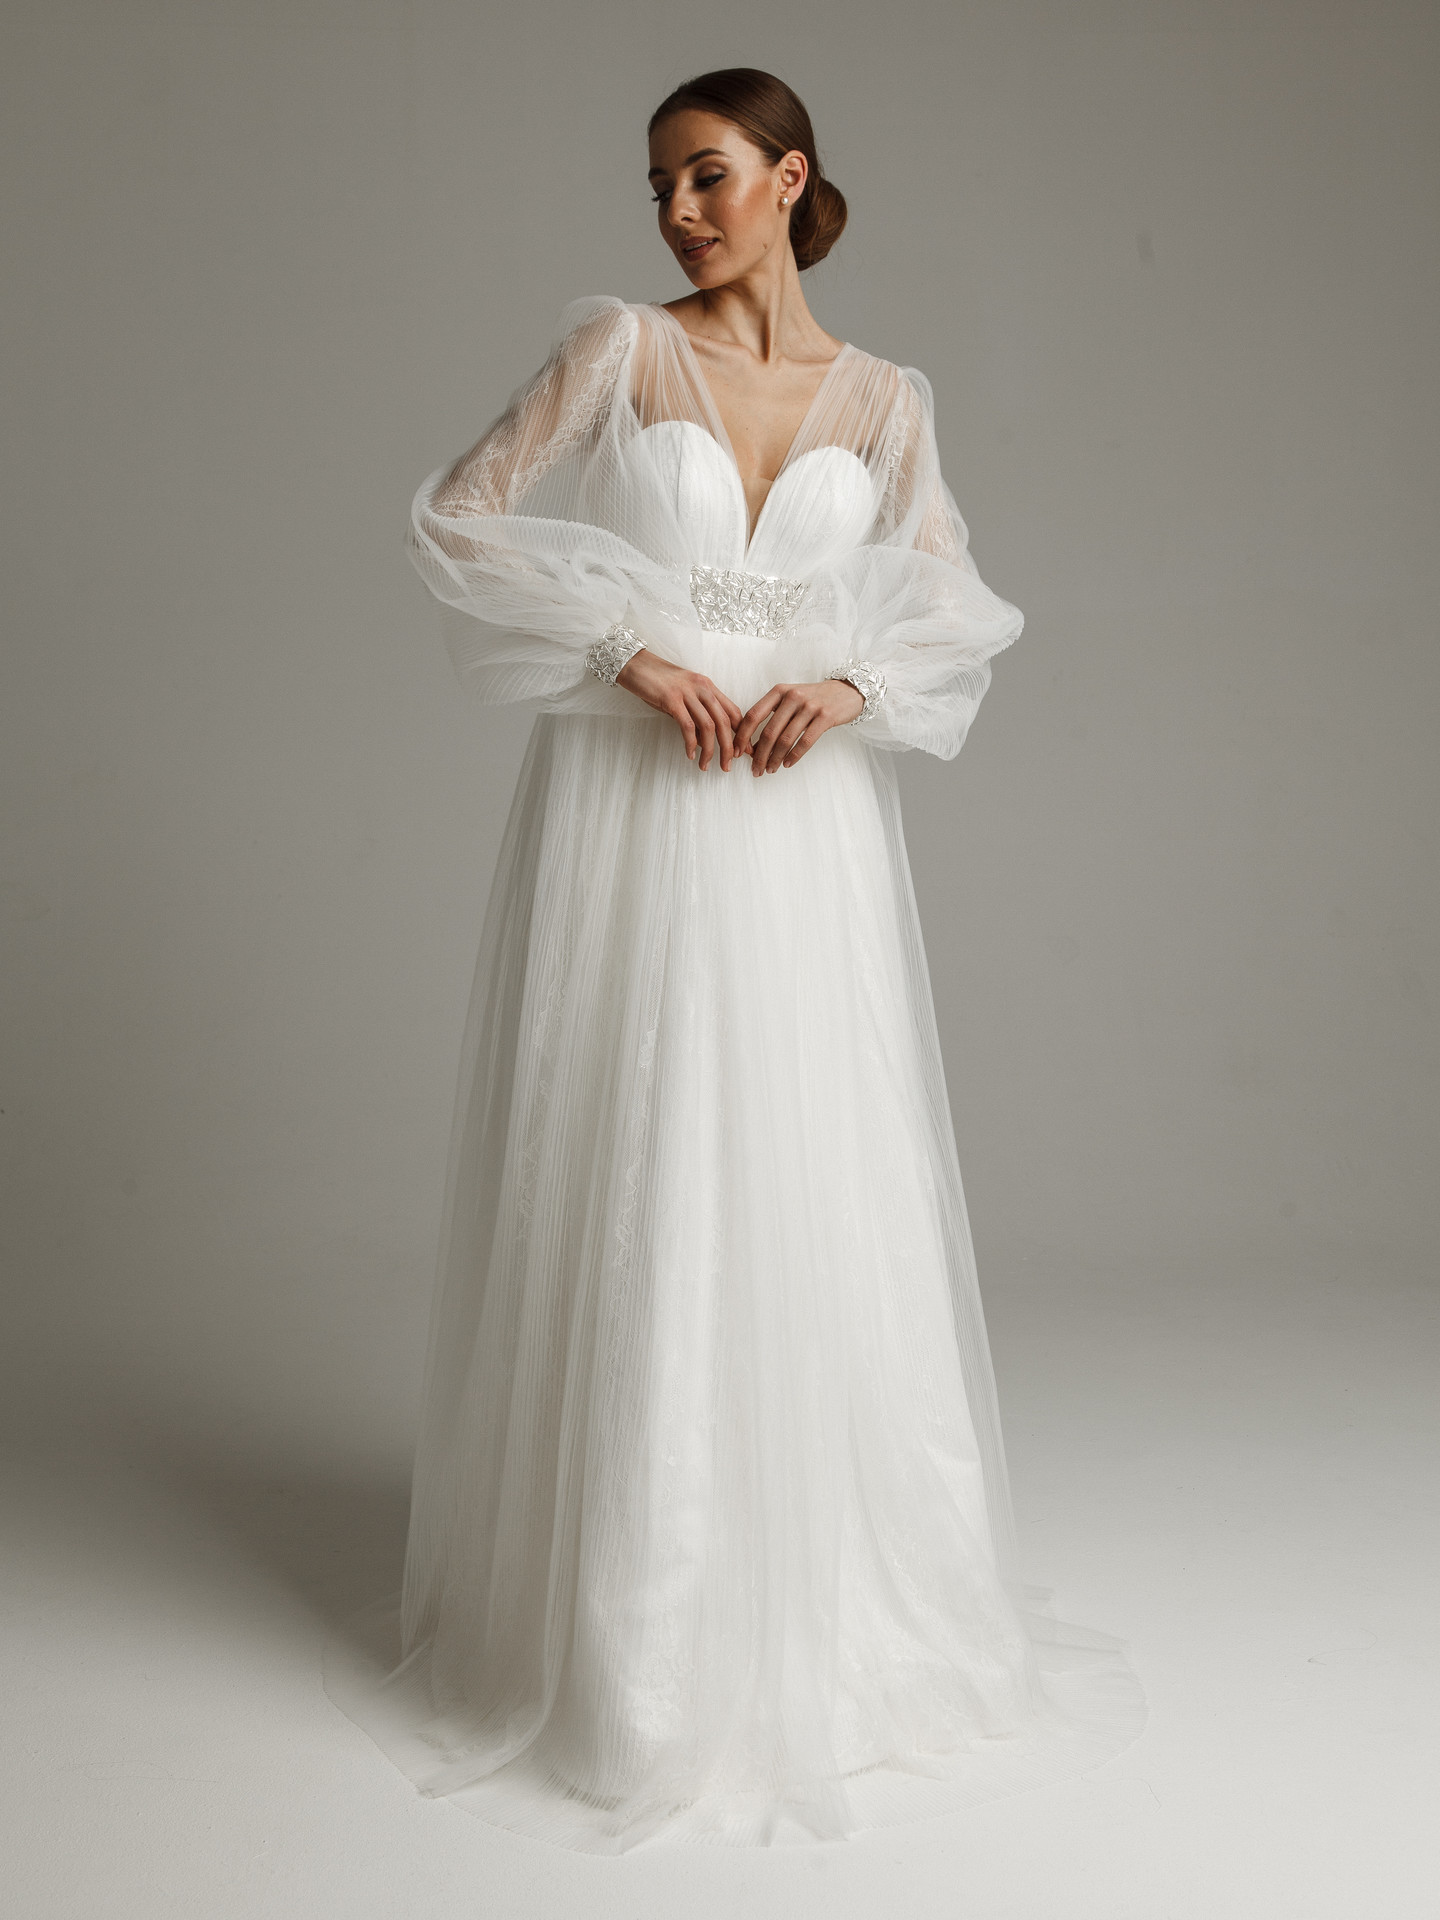 Платье Лорет, 2021, одежда, платье, свадебное, молочно-белый, кружево, А-силуэт, вышивка, рукава, скидка, распродажа, архив